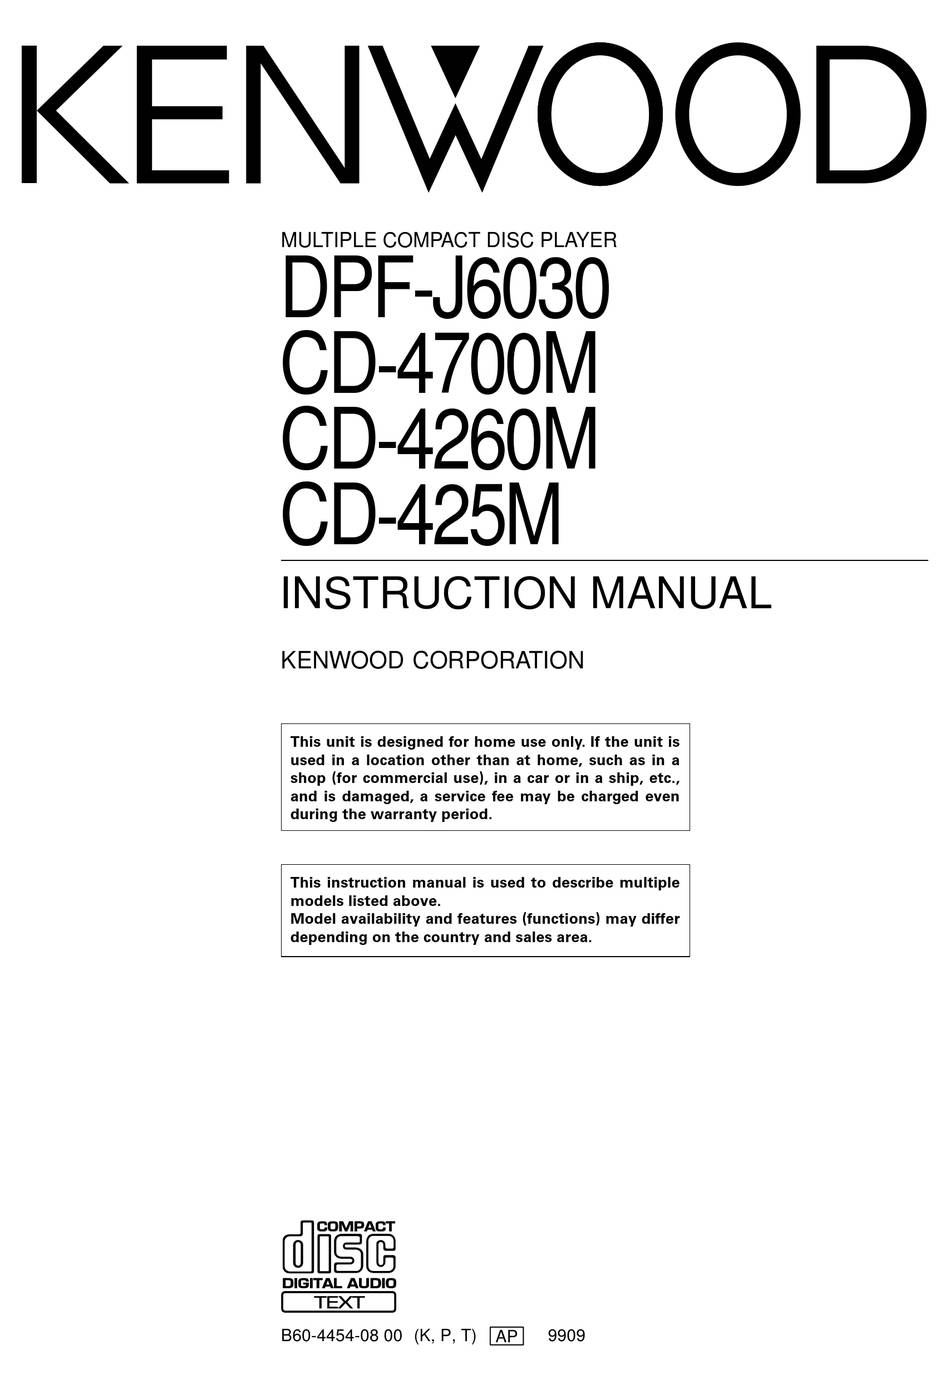 Kenwood CD-4260M